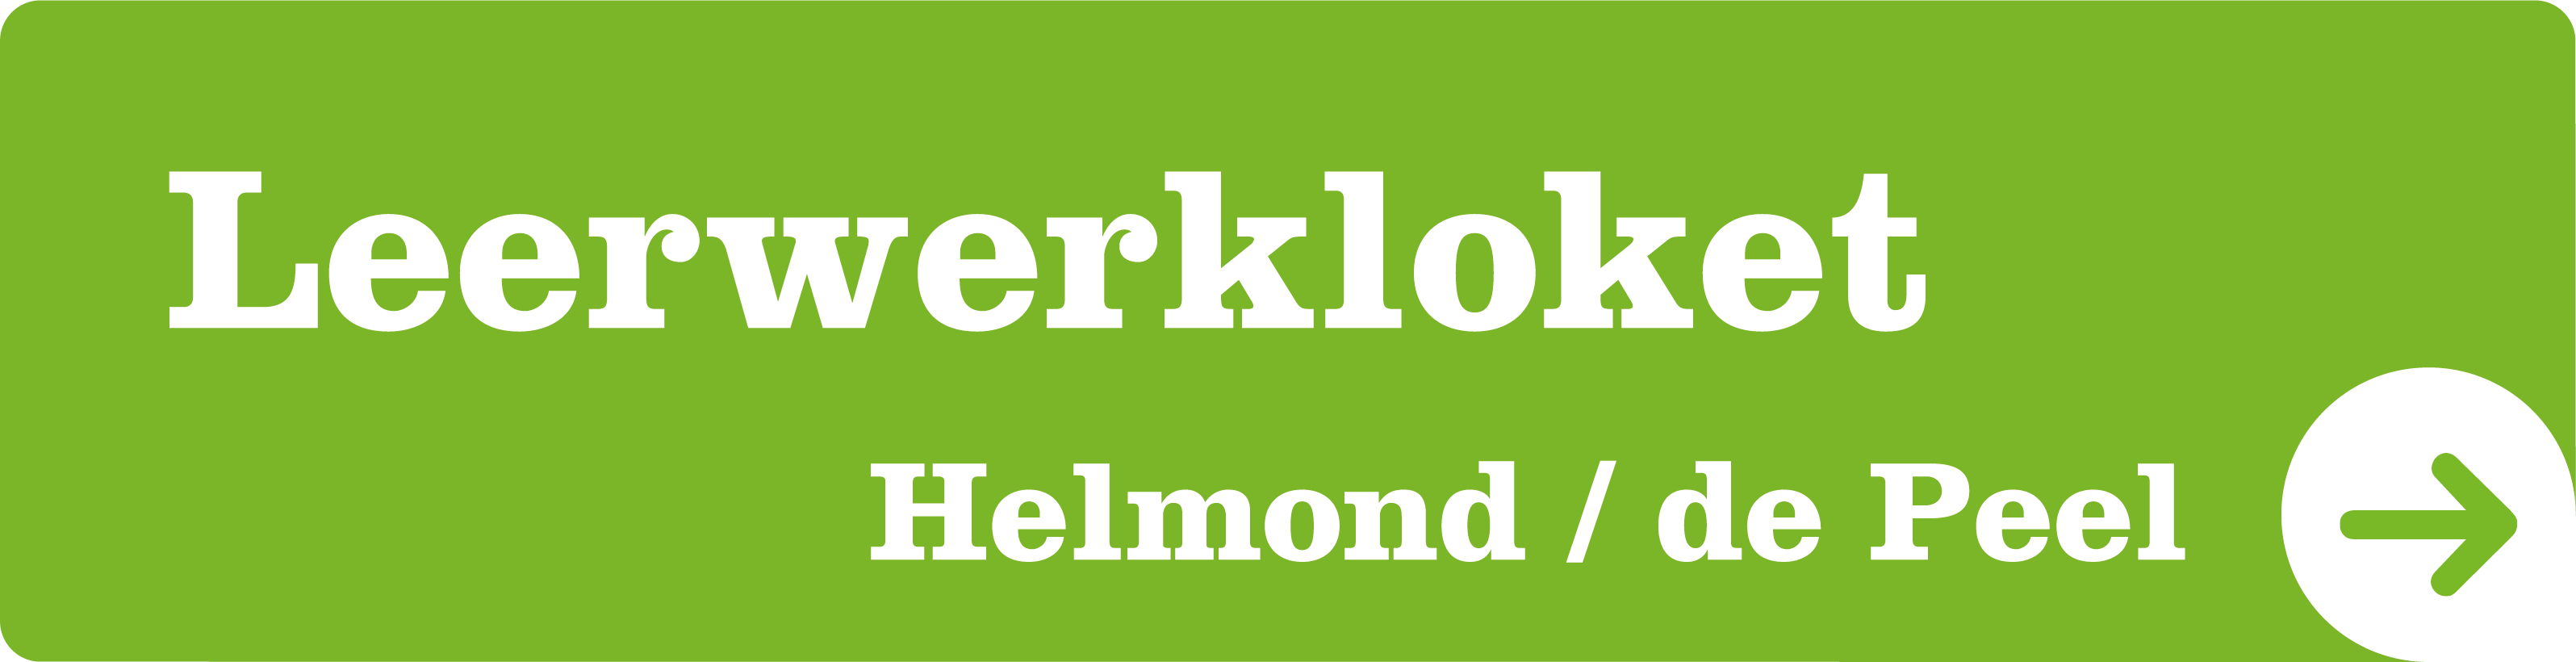 Leerwerkloket Helmond / de Peel